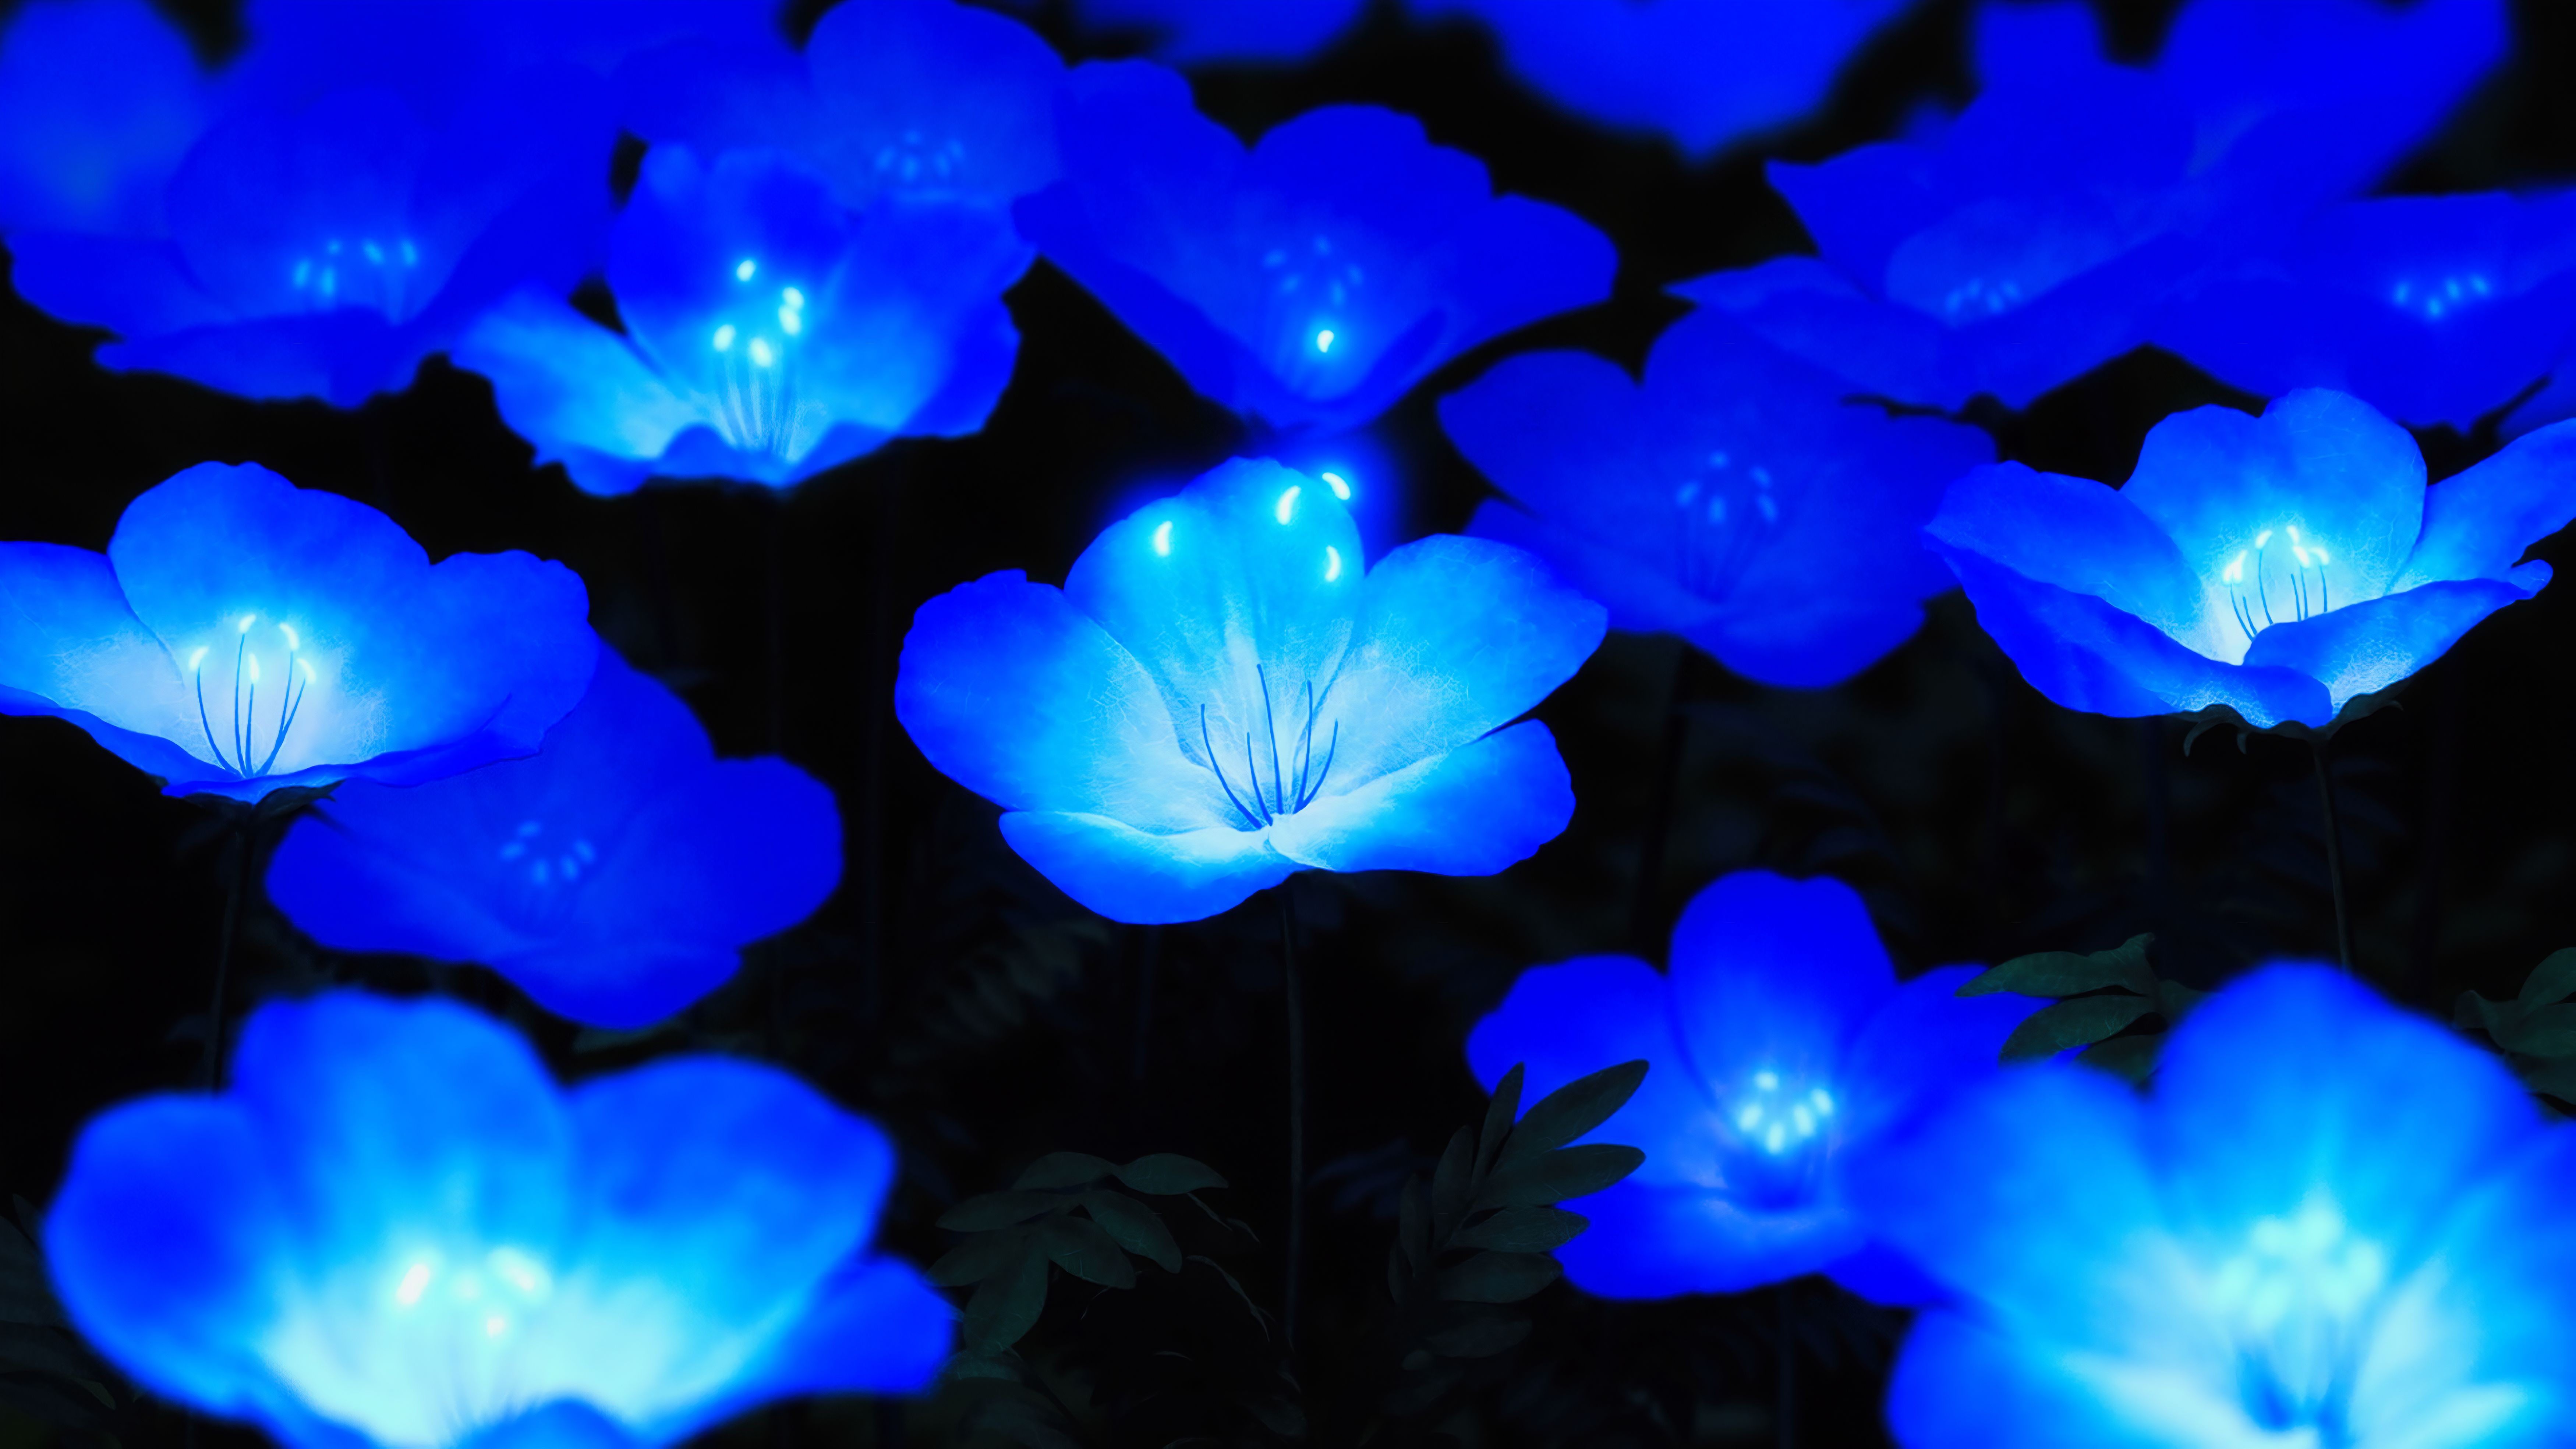  Blumen Blau Hintergrundbild 7000x3938. Kostenlose Hintergrundbilder Leuchtend Blaue Blumen, Blau, Azure, Natur, Blütenblatt, Bilder Für Ihren Desktop Und Fotos